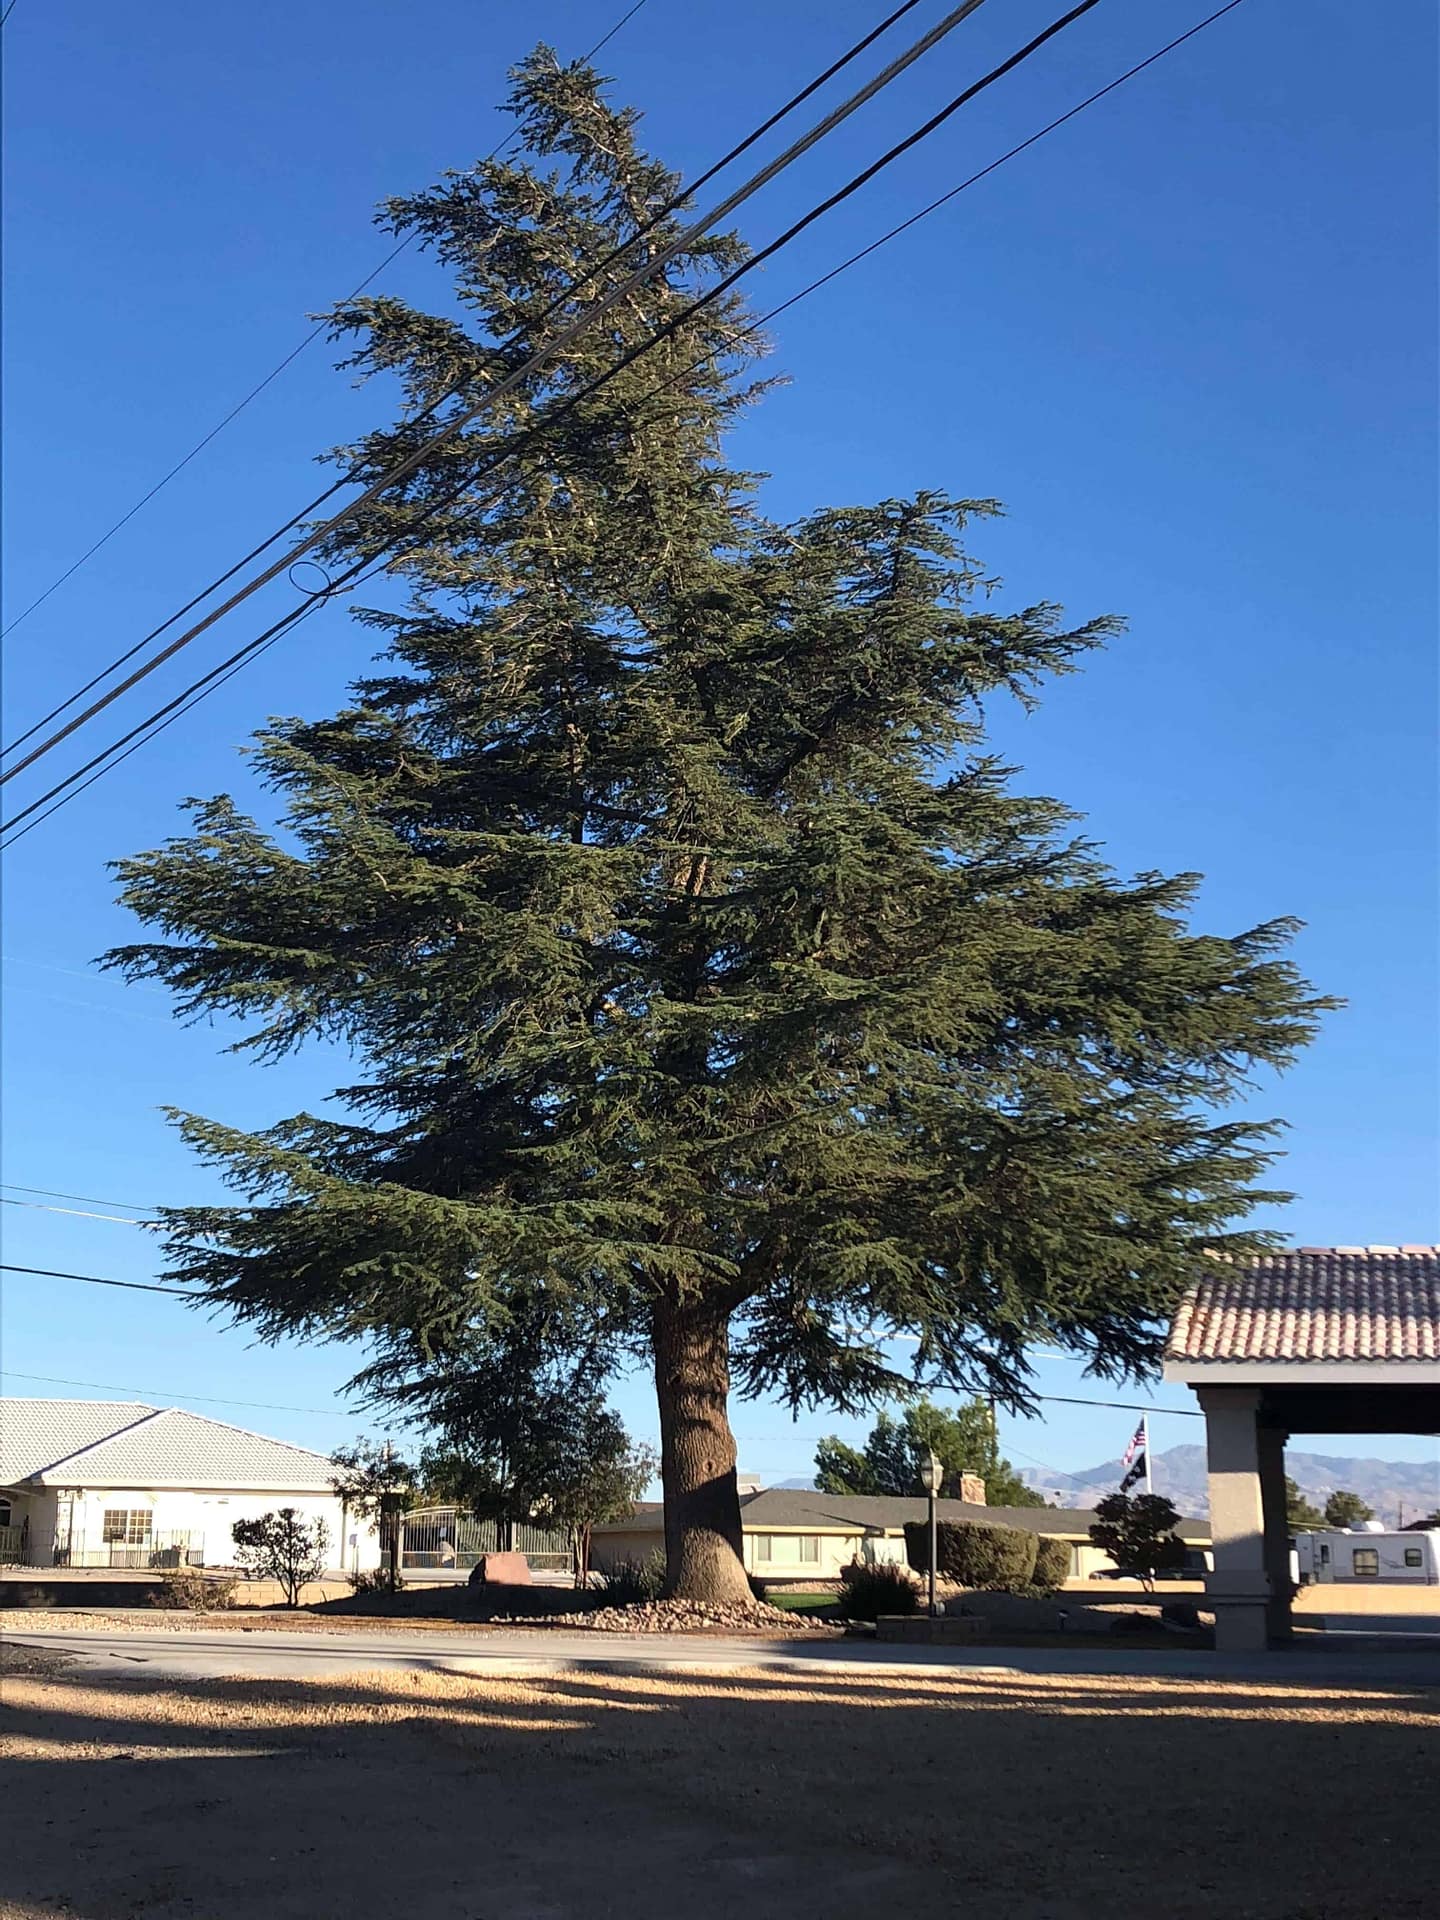 Mature Deodar Cedar in Landscape